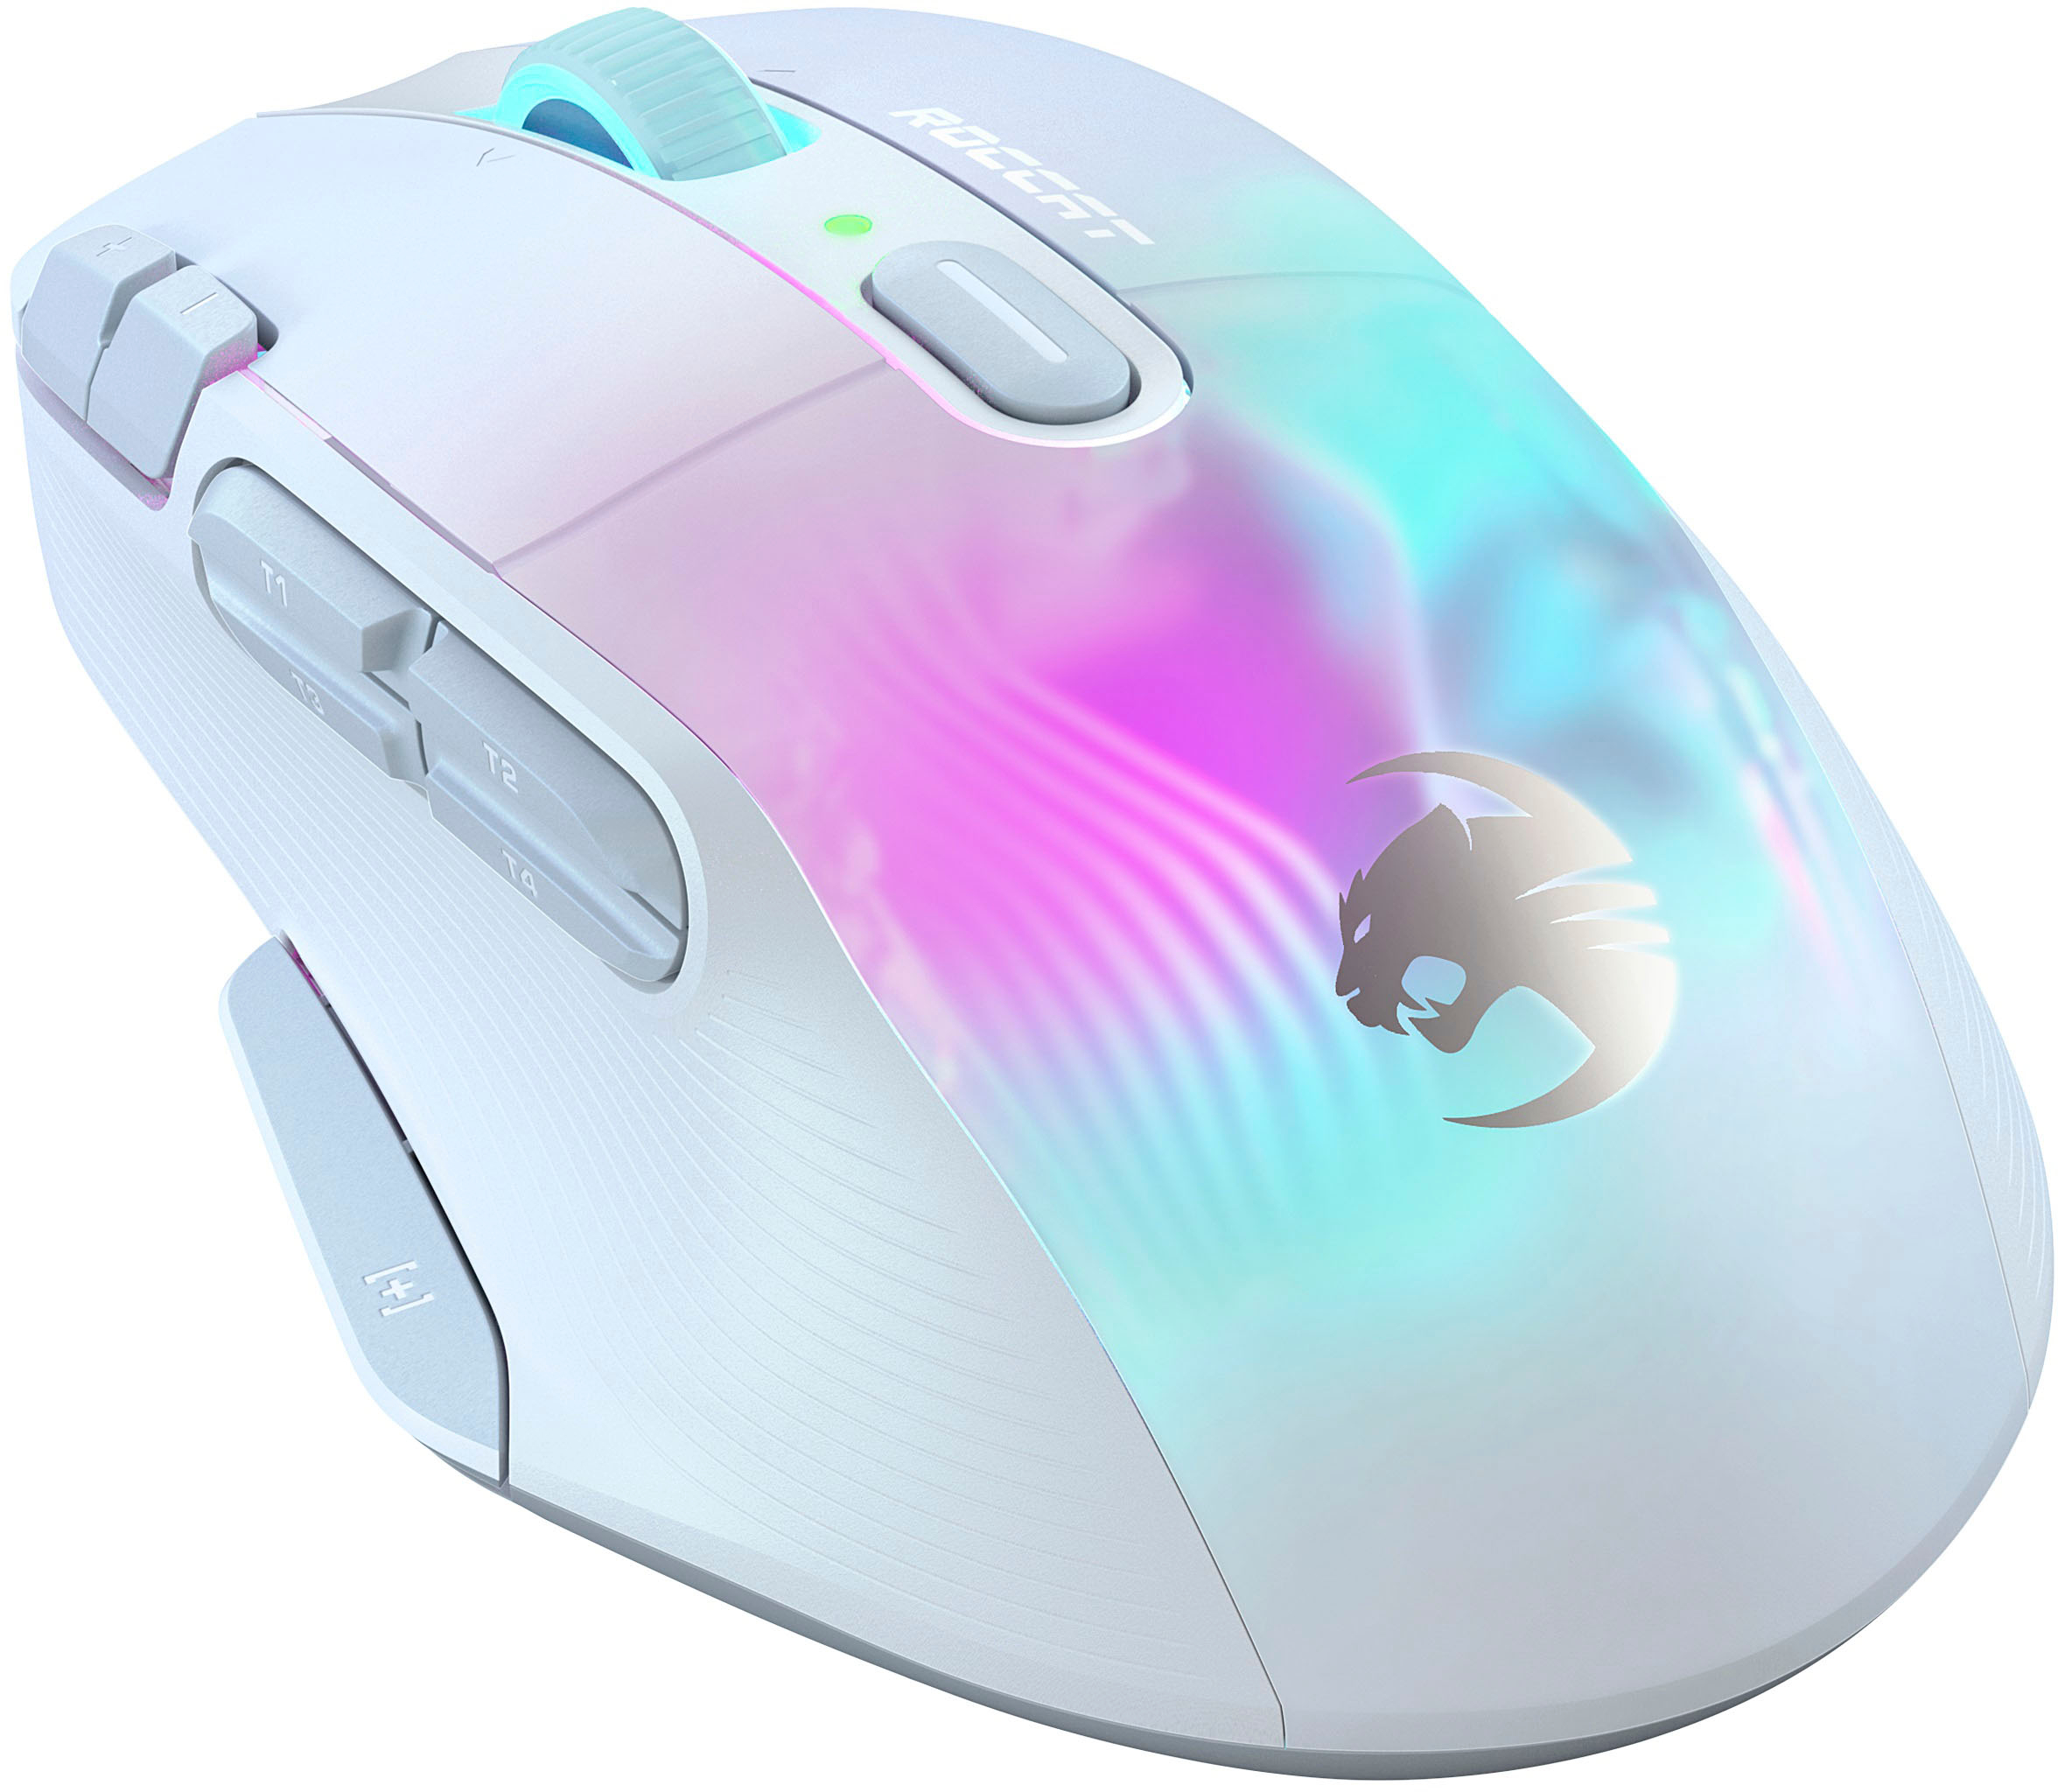 ROCCAT Kone XP RGB Gaming Mouse – Tacos Y Mas